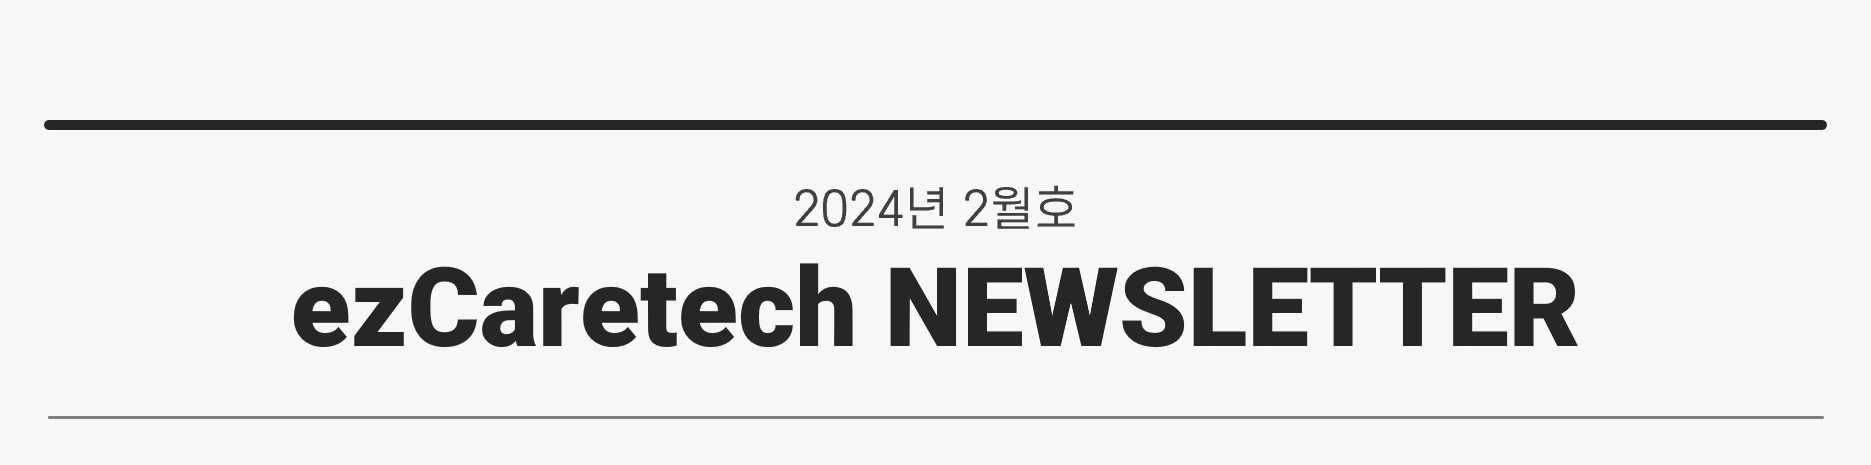 2024년 2월호 ezCaretech NEWSLETTER